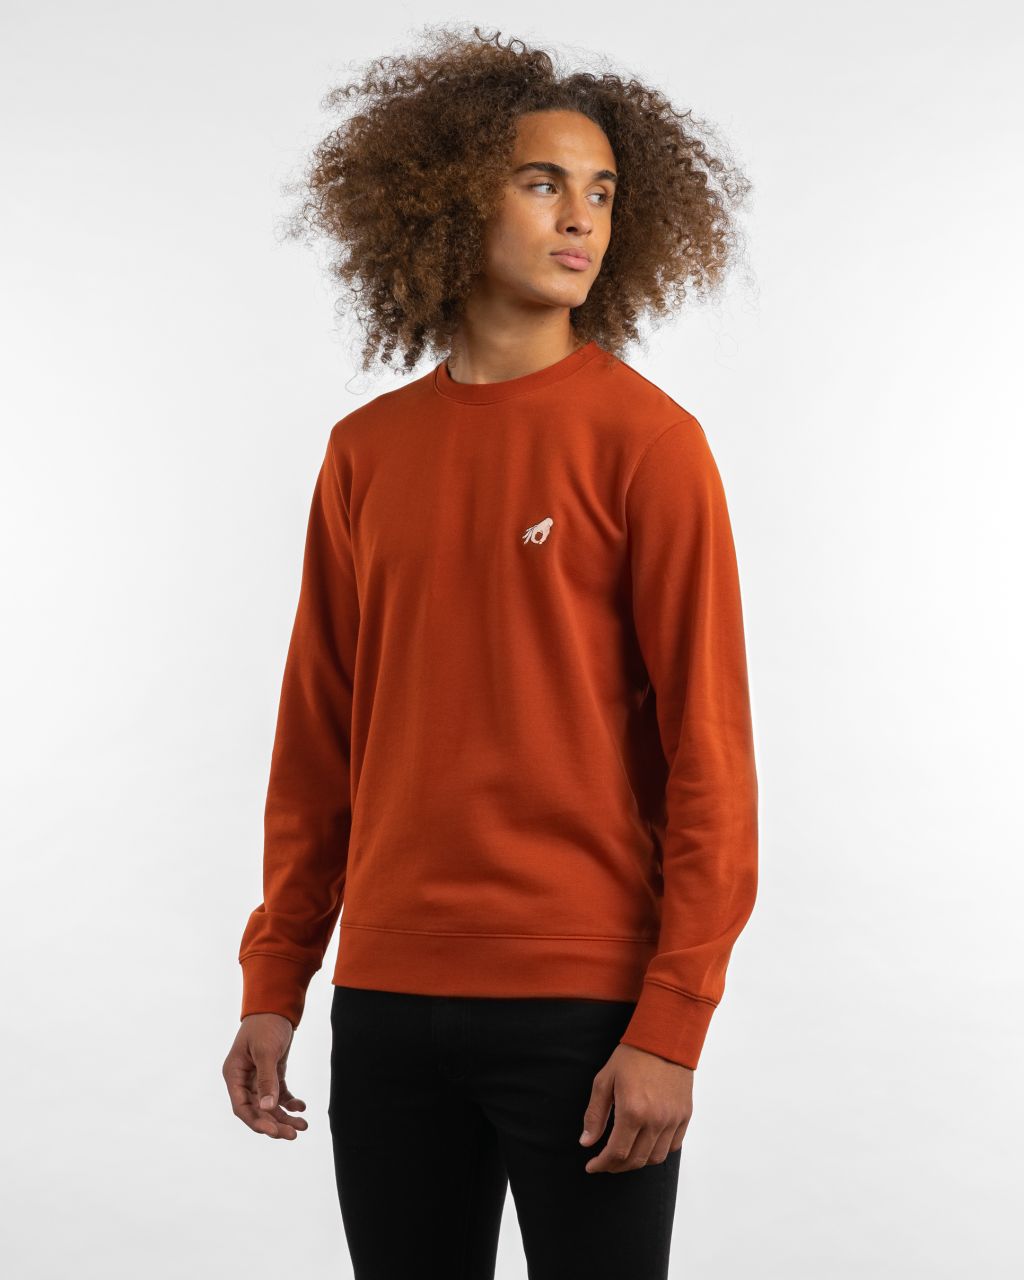 Mervin Sweater spicy orange M